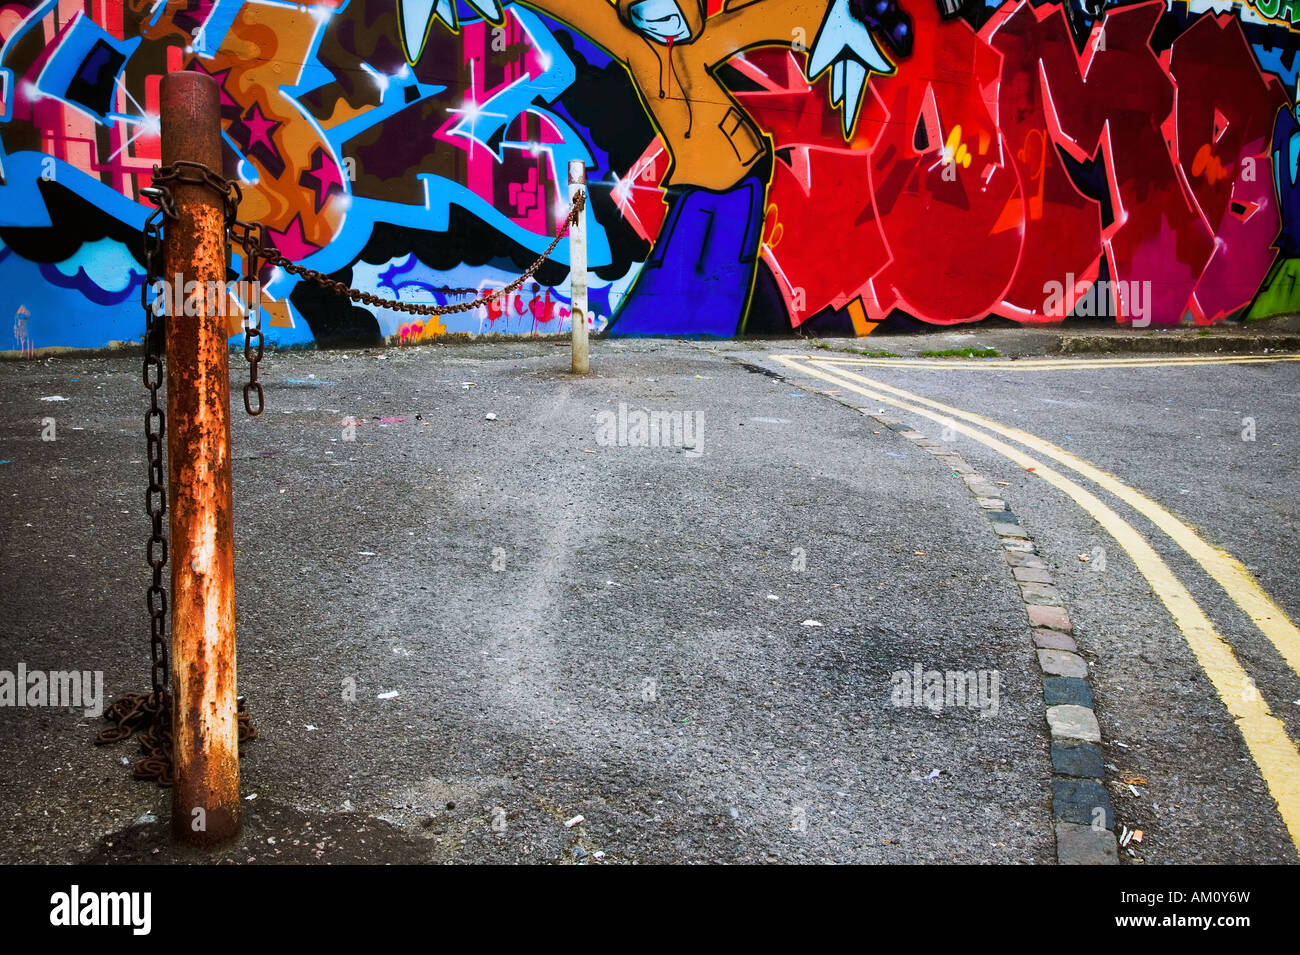 La città interna scena di urban graffiti verniciato a spruzzo su una parete Foto Stock